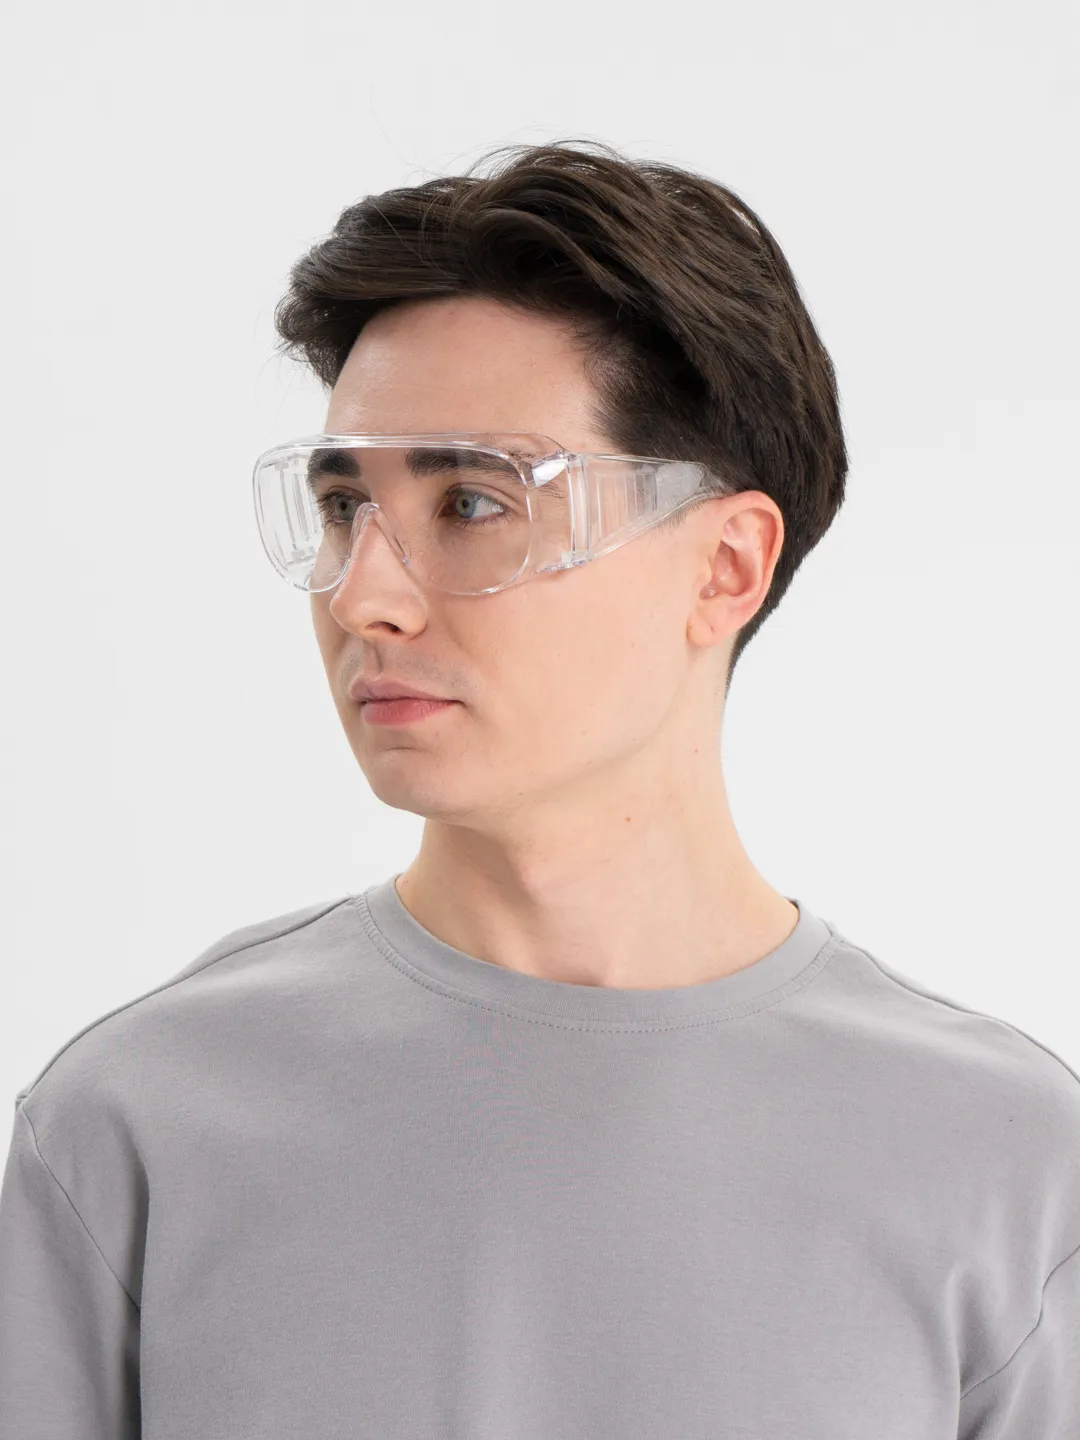 Очки защитные, строительные, медицинские РОСОМЗ О35 ВИЗИОН прозрачные, 13511 защитные герметичные очки для работы с агрессивными жидкостями росомз